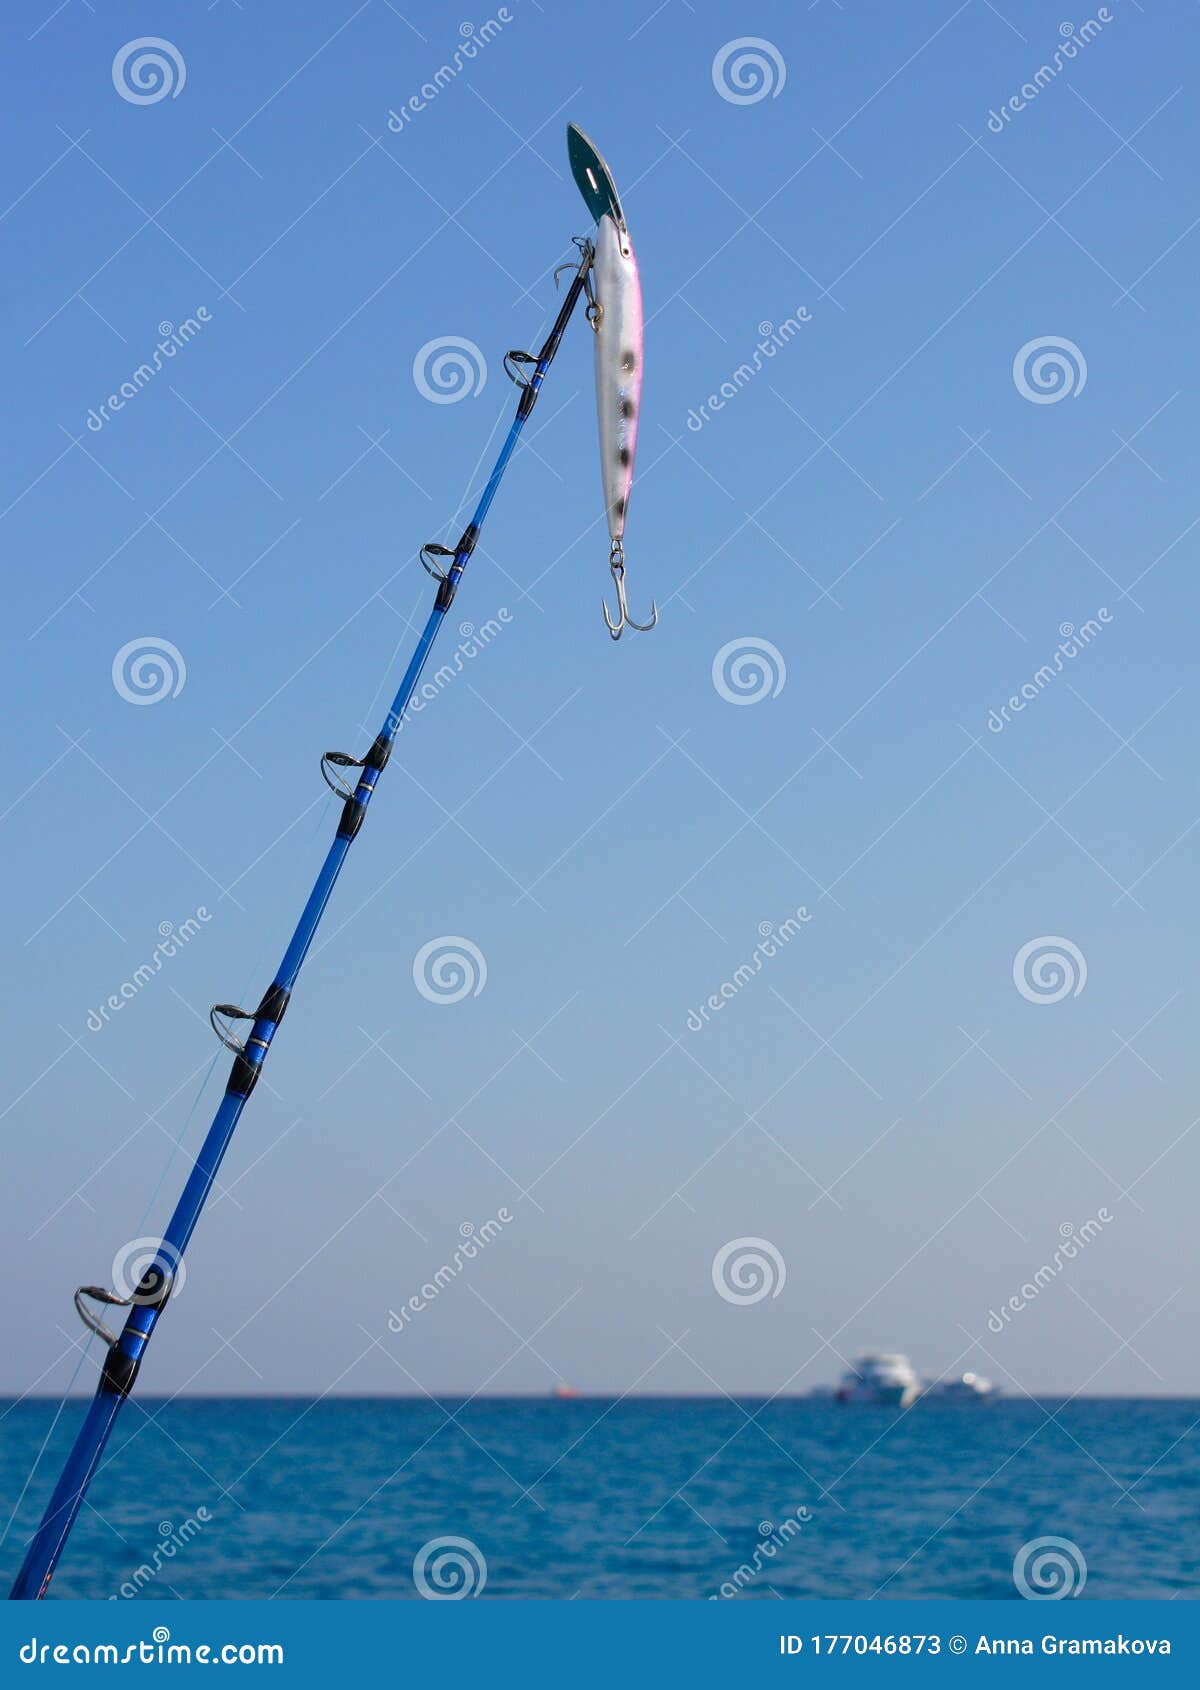 https://thumbs.dreamstime.com/z/saltwater-fishing-fishing-rod-spinning-rod-wobbler-saltwater-fishing-fishing-rod-spinning-rod-wobbler-blue-background-177046873.jpg